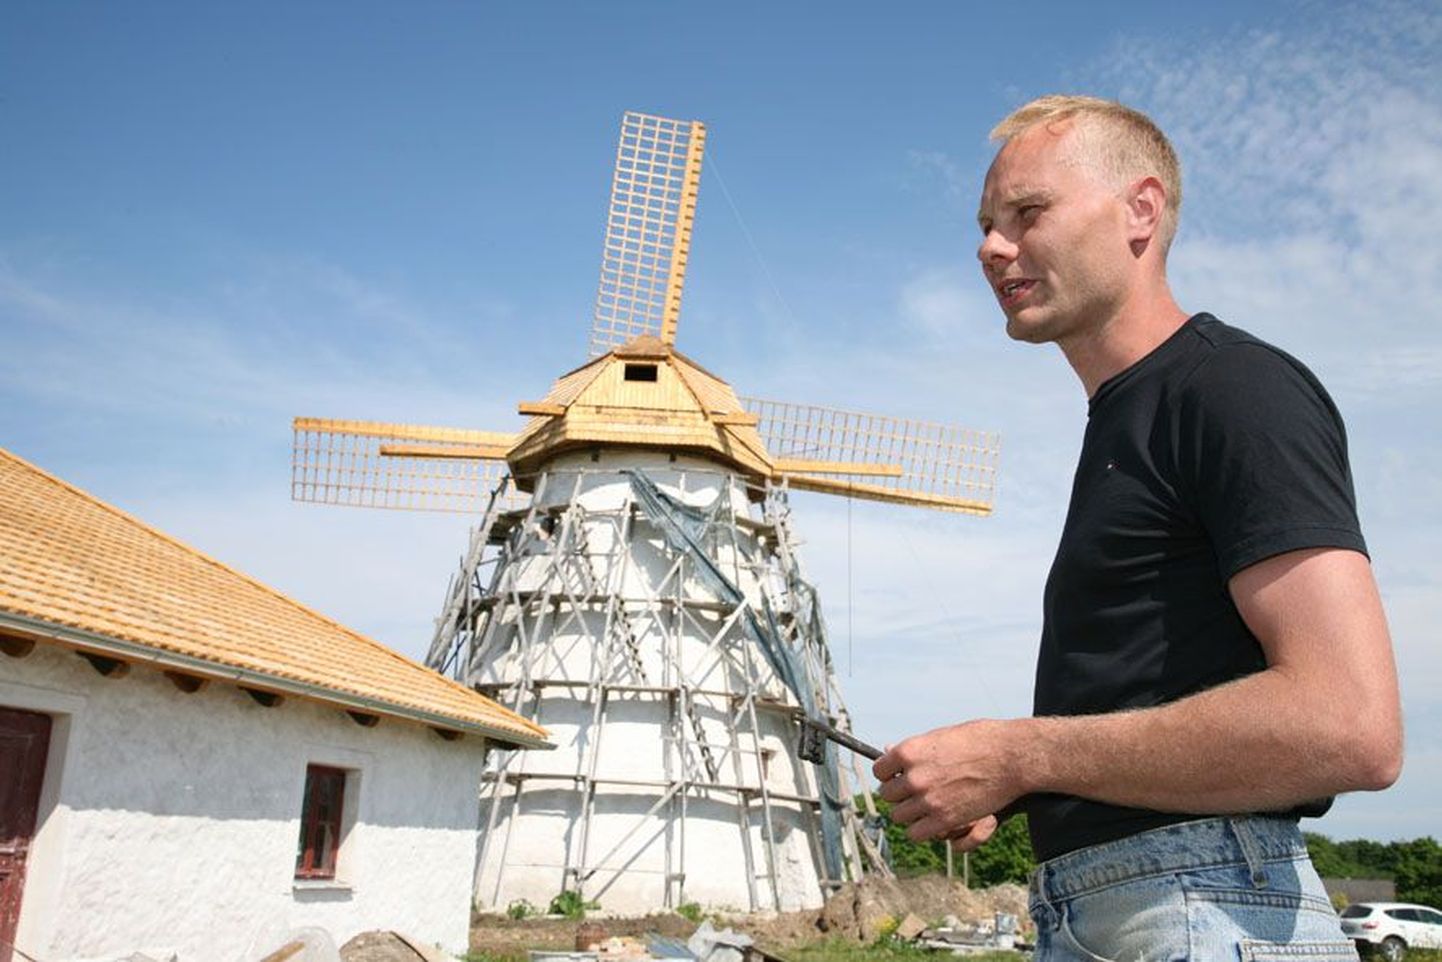 Ervita mõisa omanik ja ettevõtja Jarkko Arhilahti loodab, et saab juba augustis turistidele näidata, kuidas tuuleveski jahu jahvatab, ja möldrimajas neile ahjusooja leiba pakkuda.